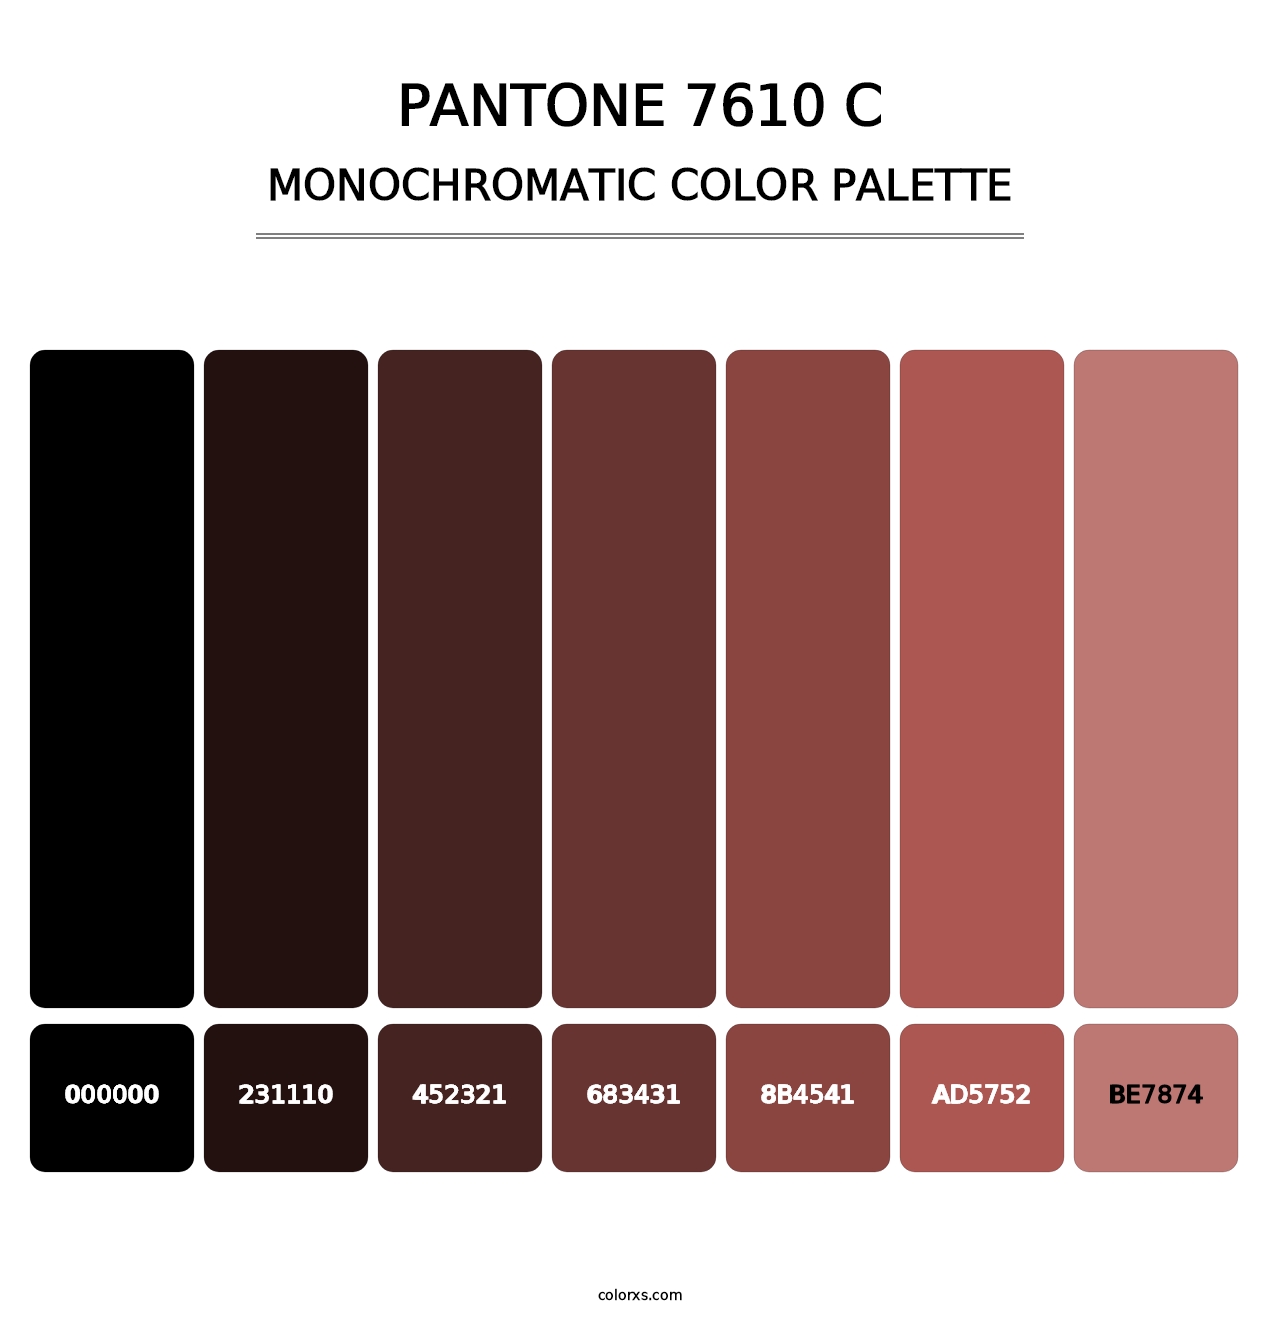 PANTONE 7610 C - Monochromatic Color Palette